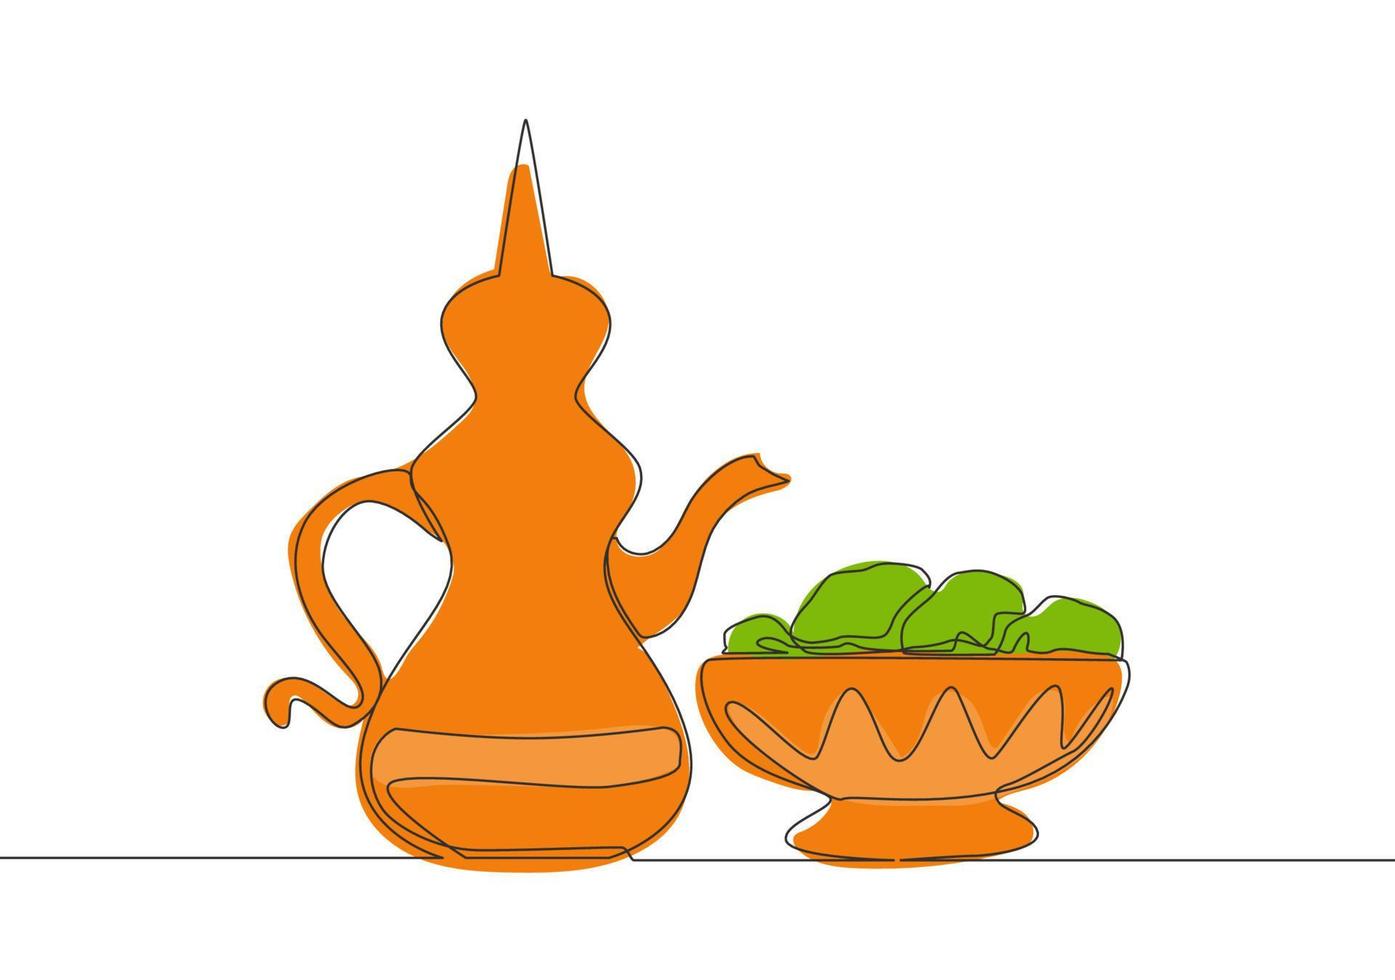 einer Single Linie Zeichnung von Teekanne in der Regel enthält zam zam Wasser und Termine Obst auf ein Platte. Essen und trinken zu Essen nach Fasten Konzept kontinuierlich Linie zeichnen Design Vektor Illustration